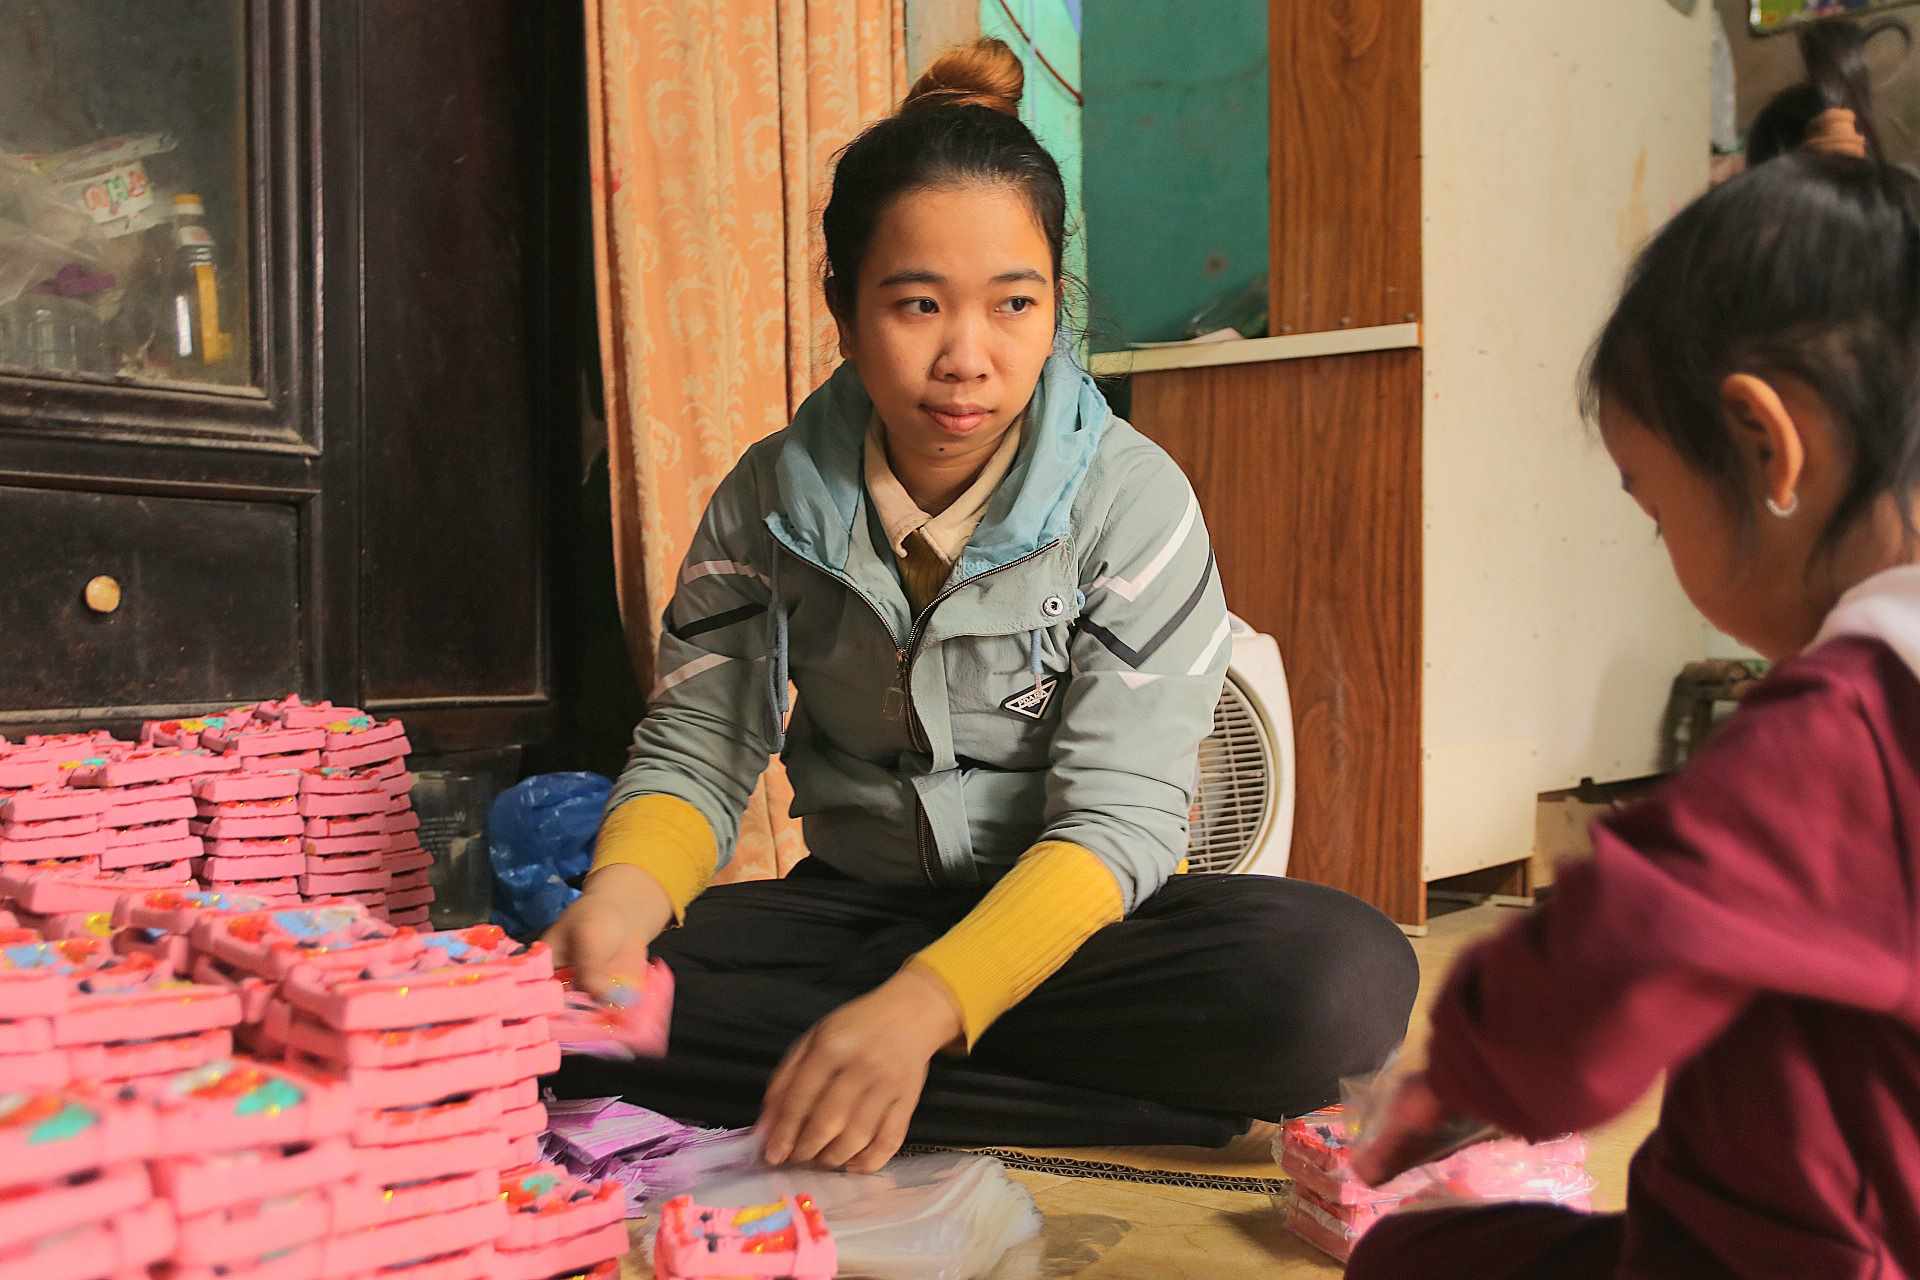  Bên trong nhà, chị Võ Thị Hằng (31 tuổi, con gái của ông Nam) đang say sưa thực hiện công đoạn vẽ màu cho ông Táo rồi đóng thùng. Mọi công đoạn đang được gấp rút để kịp hoàn thiện hàng cho khách. 